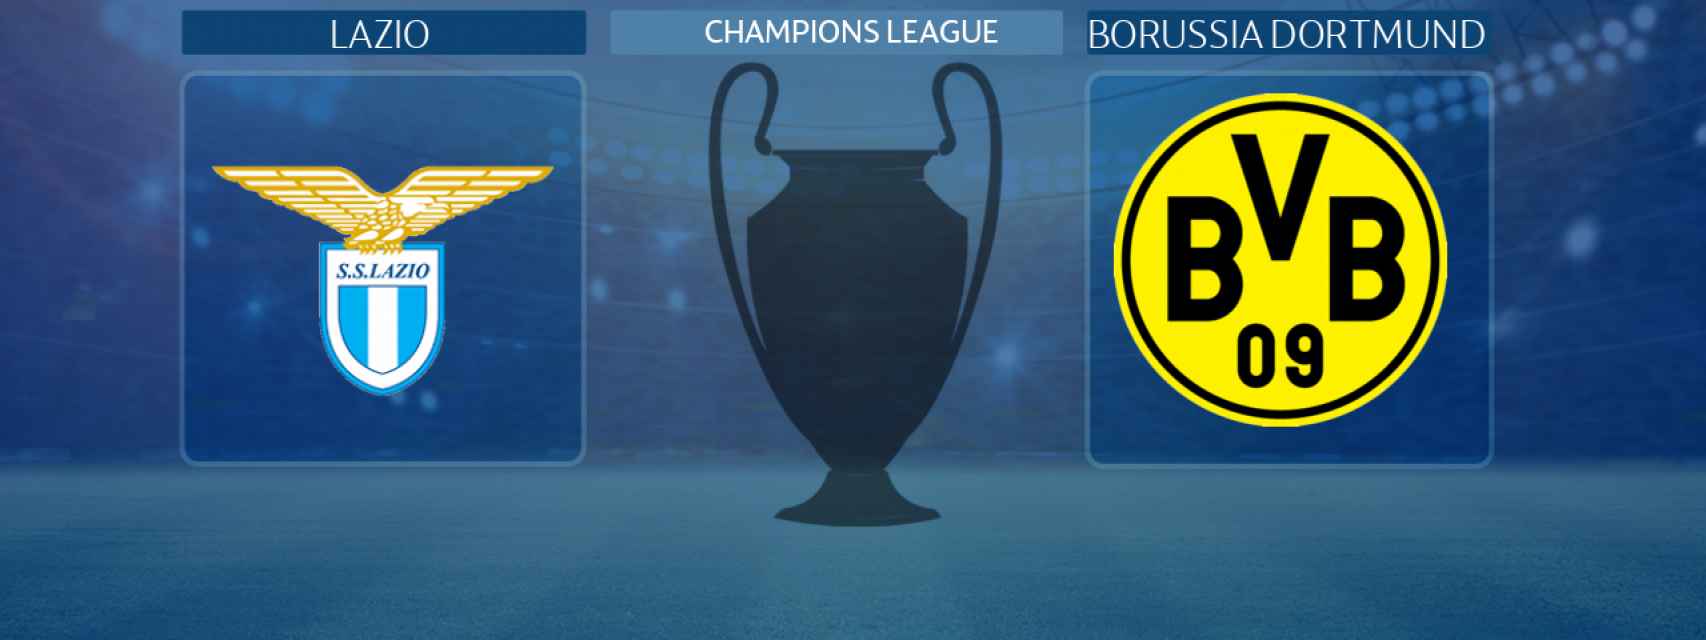 Lazio - Borussia Dortmund, partido de la Champions League